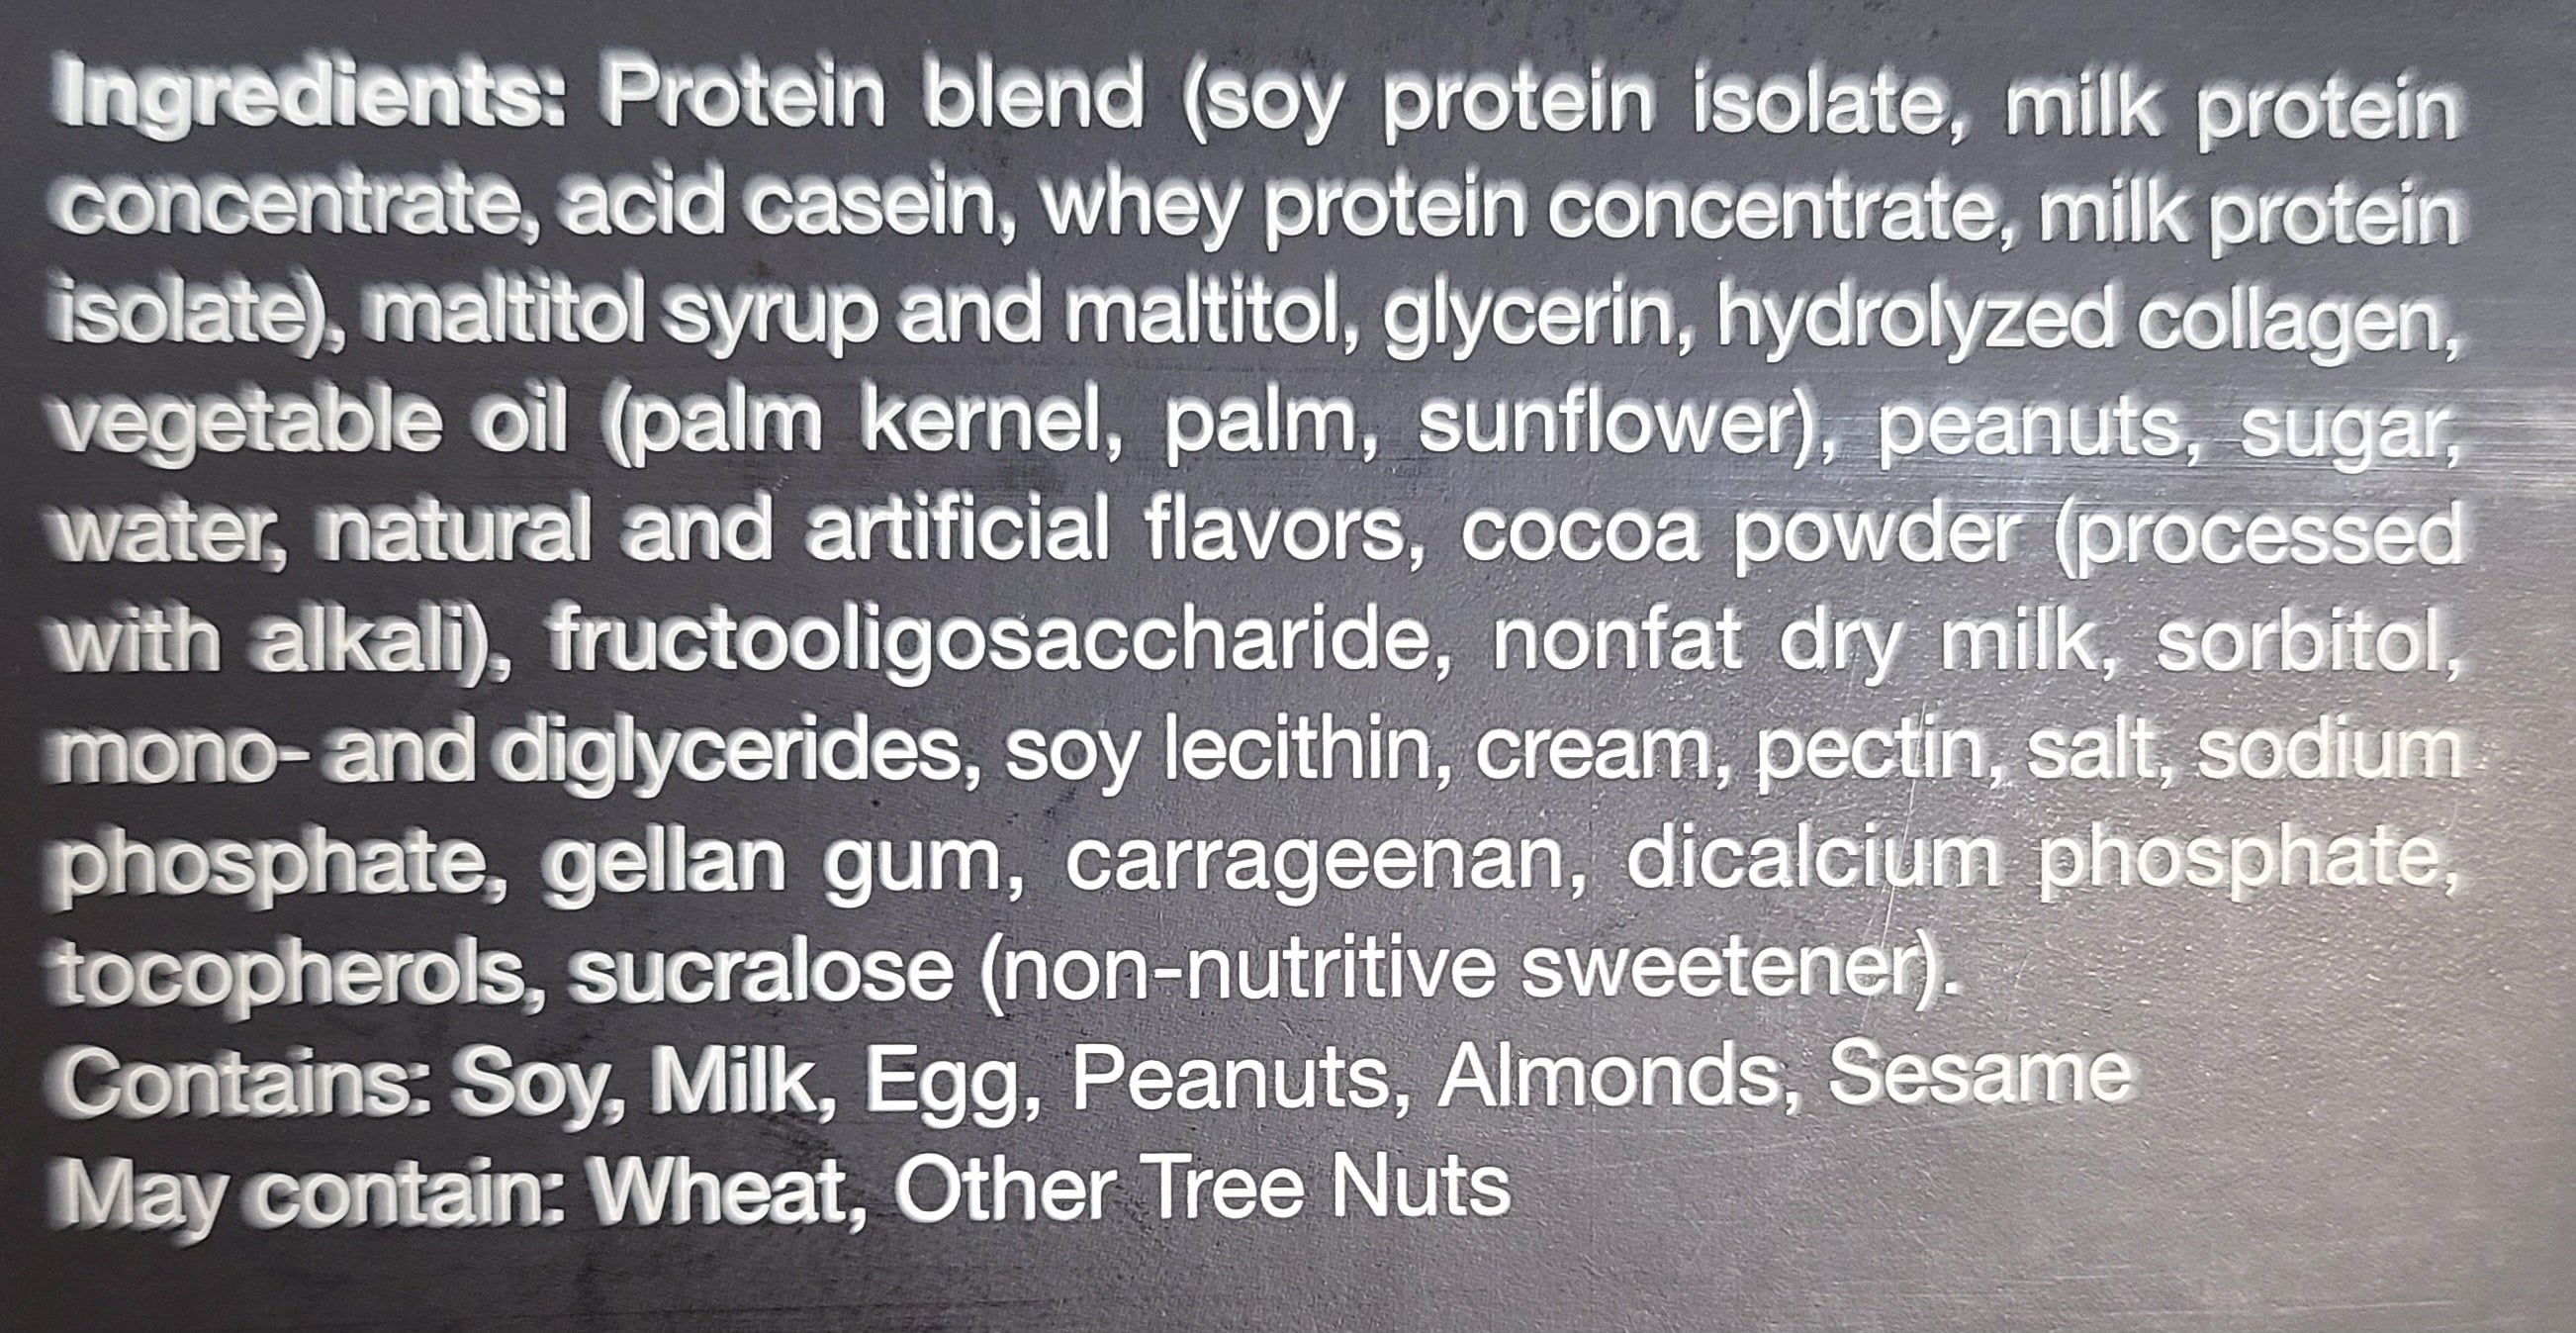 Caramel Nut Protein Bar - Proti-Bar